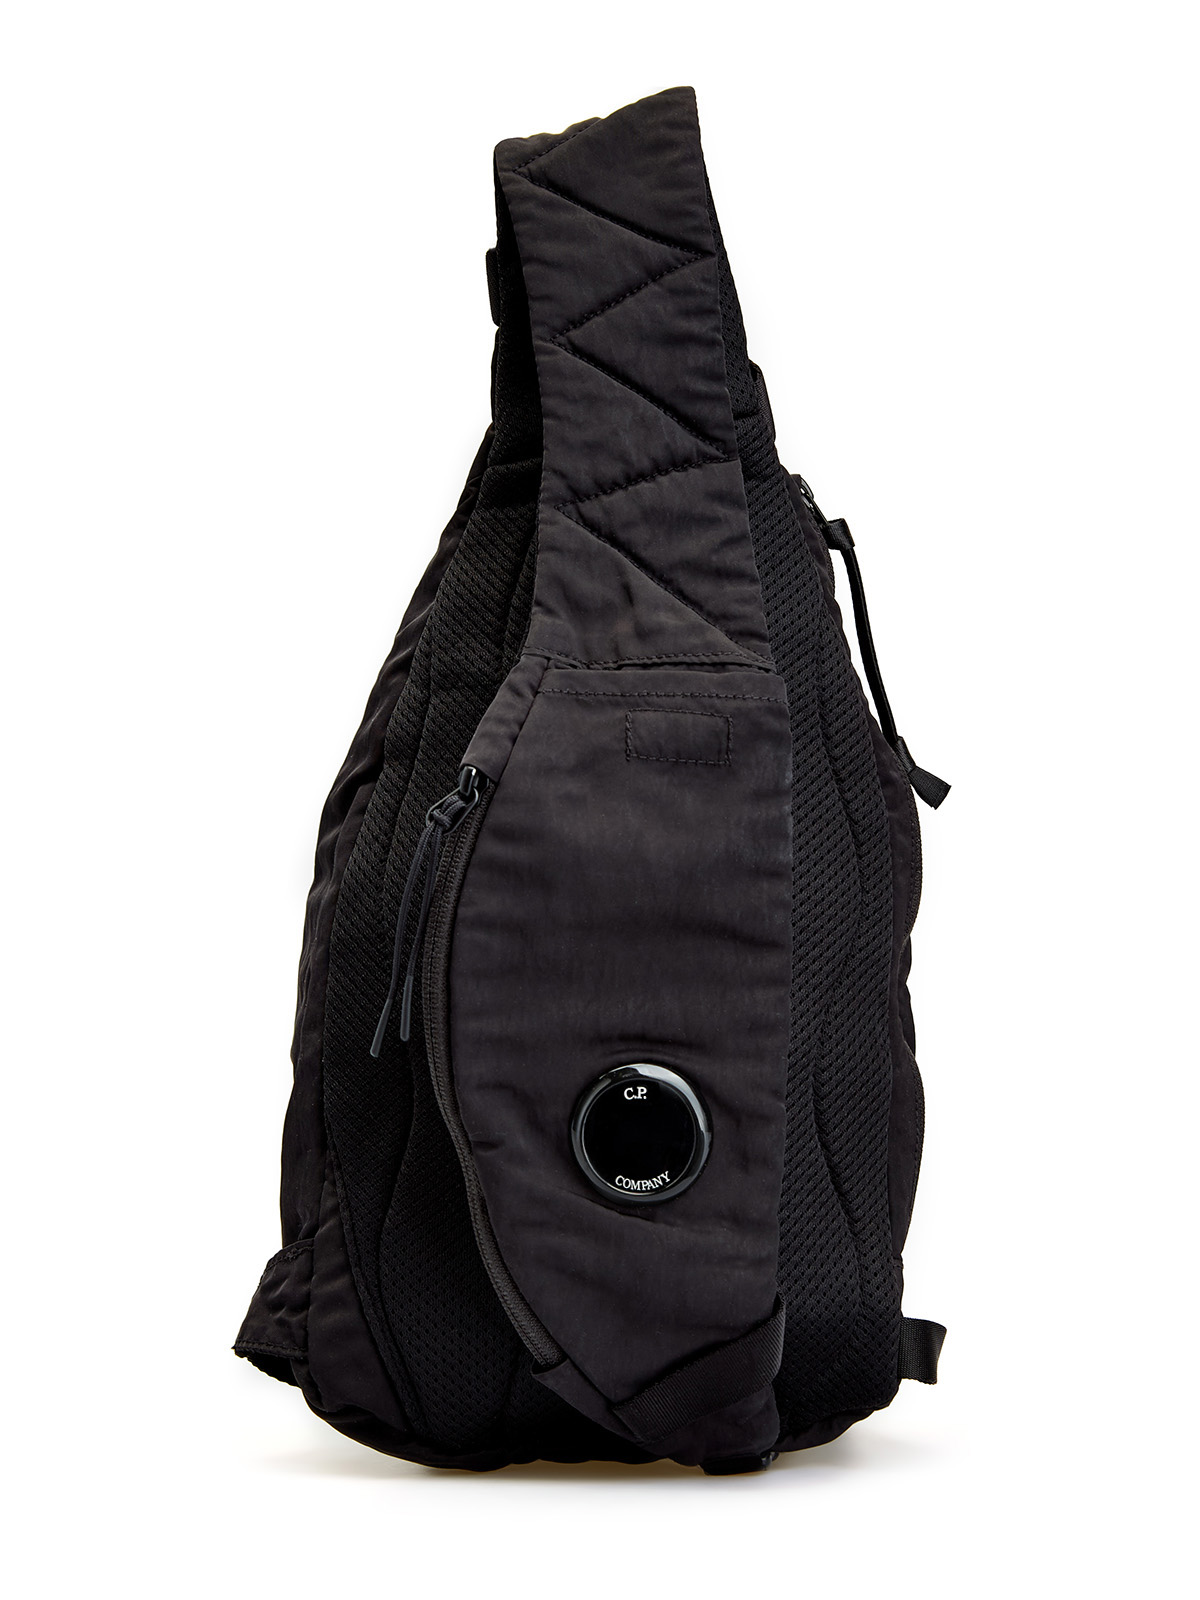 Рюкзак Nylon B с регулируемым ремнем-crossbody и линзой C.P. C.P.COMPANY, цвет черный, размер 60;59;58 - фото 4